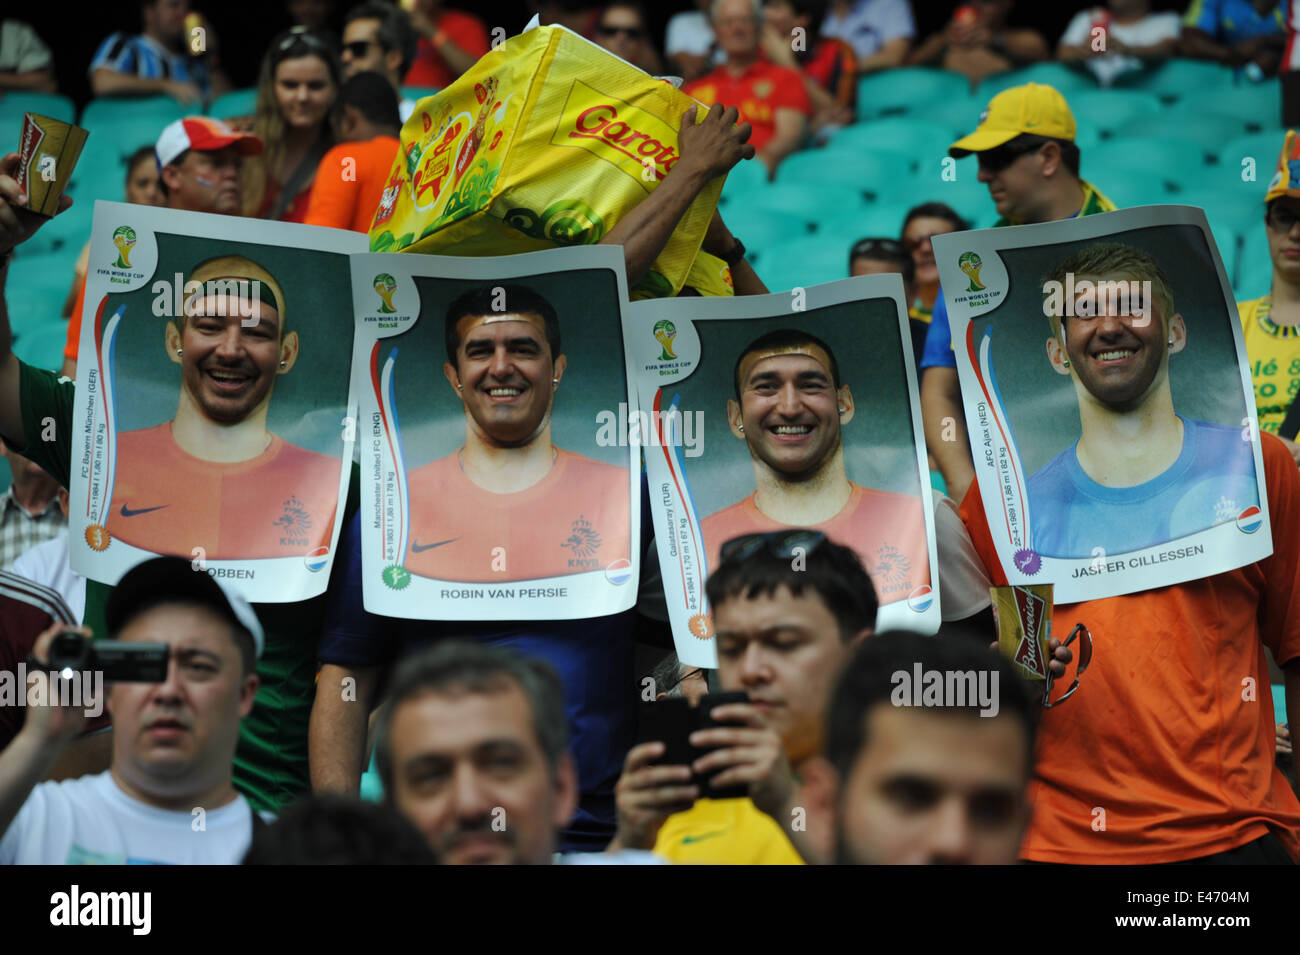 WM 2014, Fans mit Spielerfotos, Salvador da Bahia, Brésil. Usage éditorial uniquement. Banque D'Images